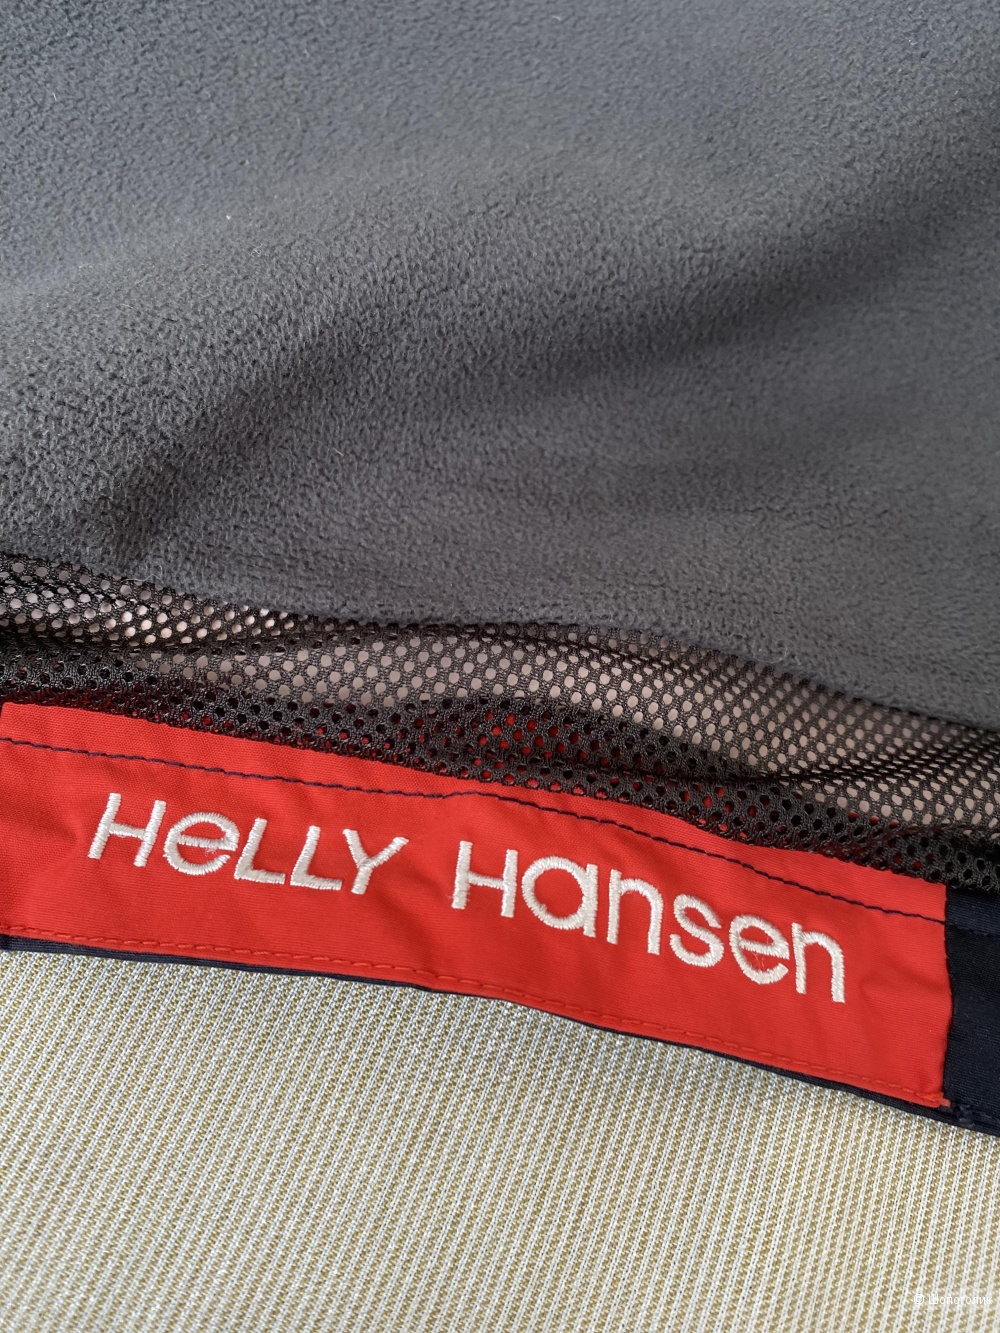 Куртка Helly Hanson p L/G (46/48)